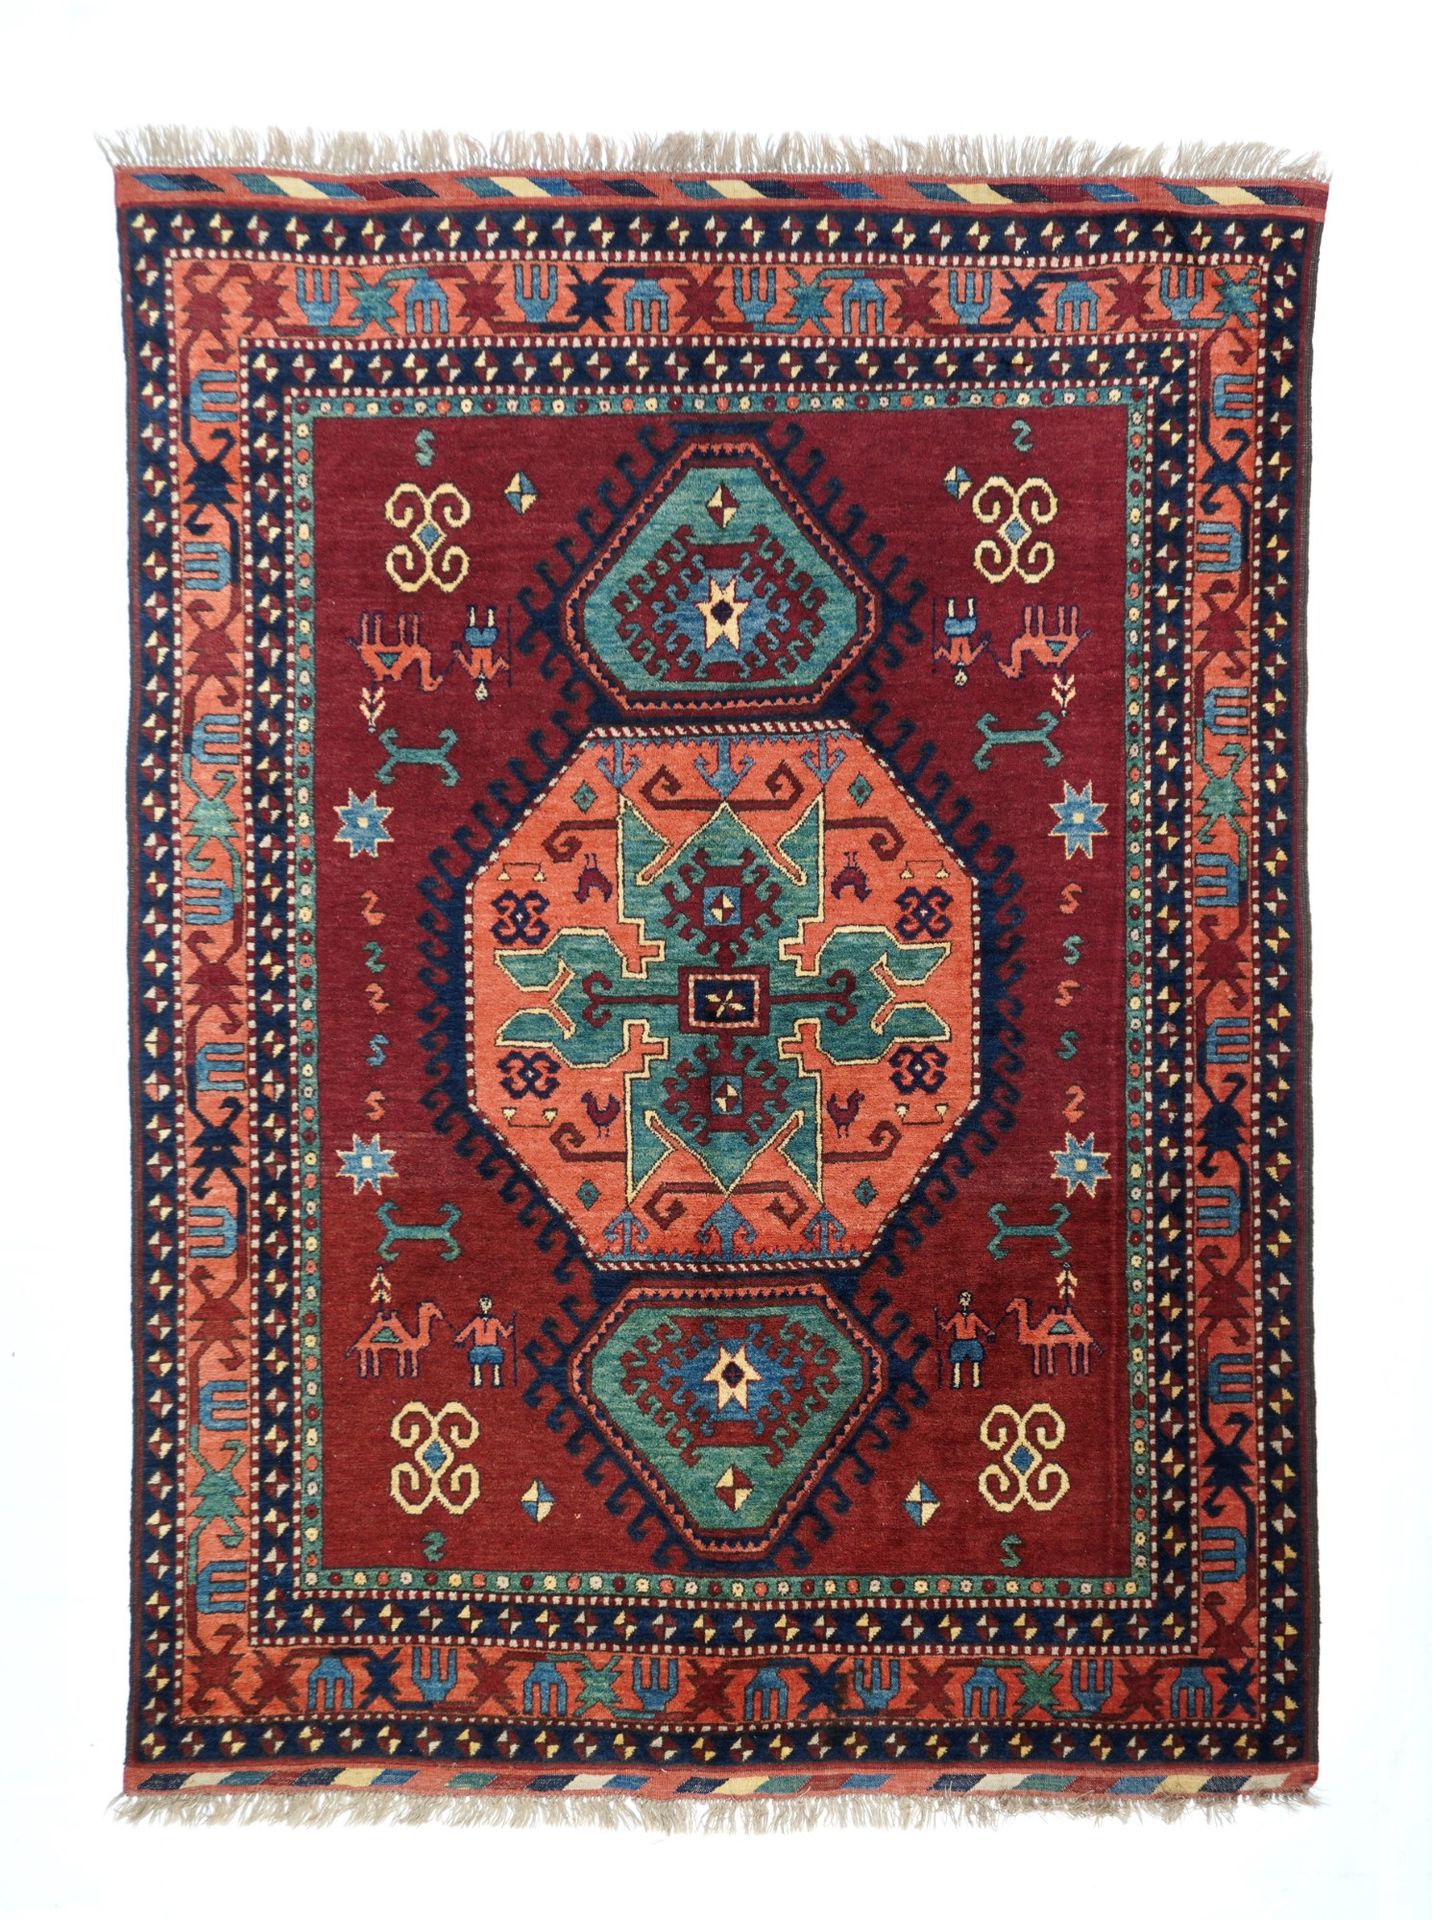 Null Tapis vintage Afghan Kazak, 5'4" x 7'1" ( 1.63 x 2.16 M )